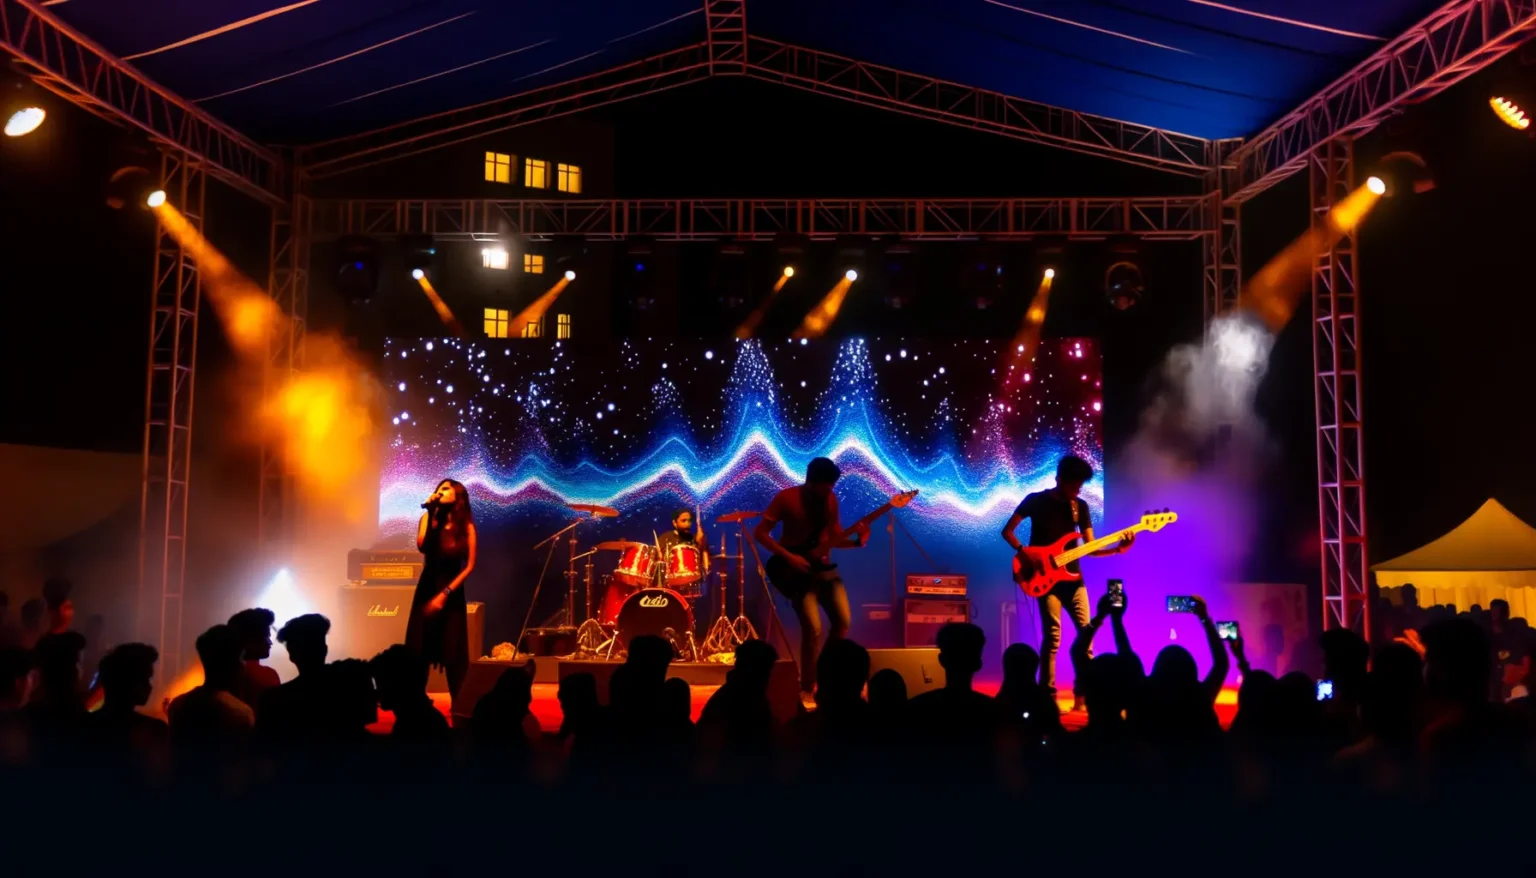 Eine Rockband spielt auf einer Bühne bei einem nächtlichen Konzert vor einer begeisterten Menschenmenge. Farbenfrohes Bühnenlicht und ein dynamischer, sternenhimmelartiger Hintergrund erhellen die Szene. Die Bandmitglieder, darunter ein Sänger, Gitarristen und ein Schlagzeuger, sind aktiv und energetisch bei ihrer Performance.